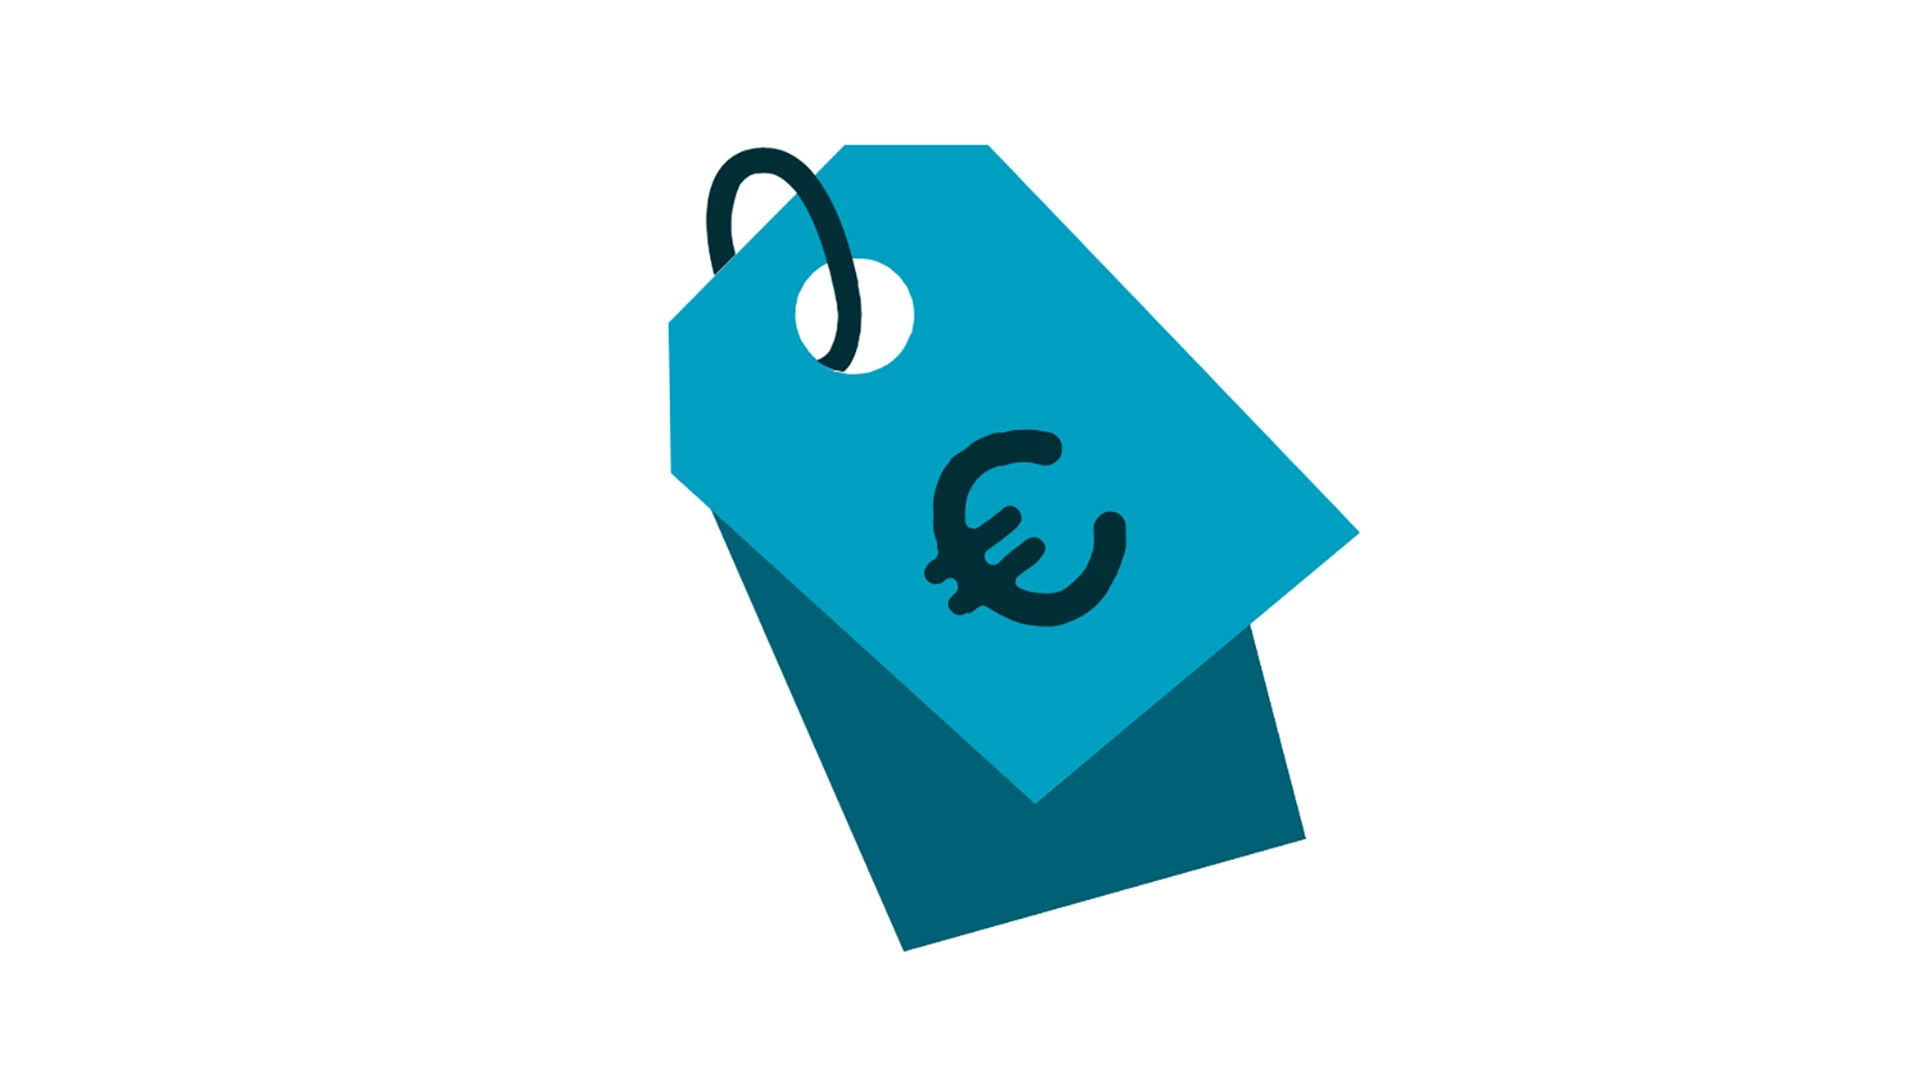 Euro symbol on sales tag